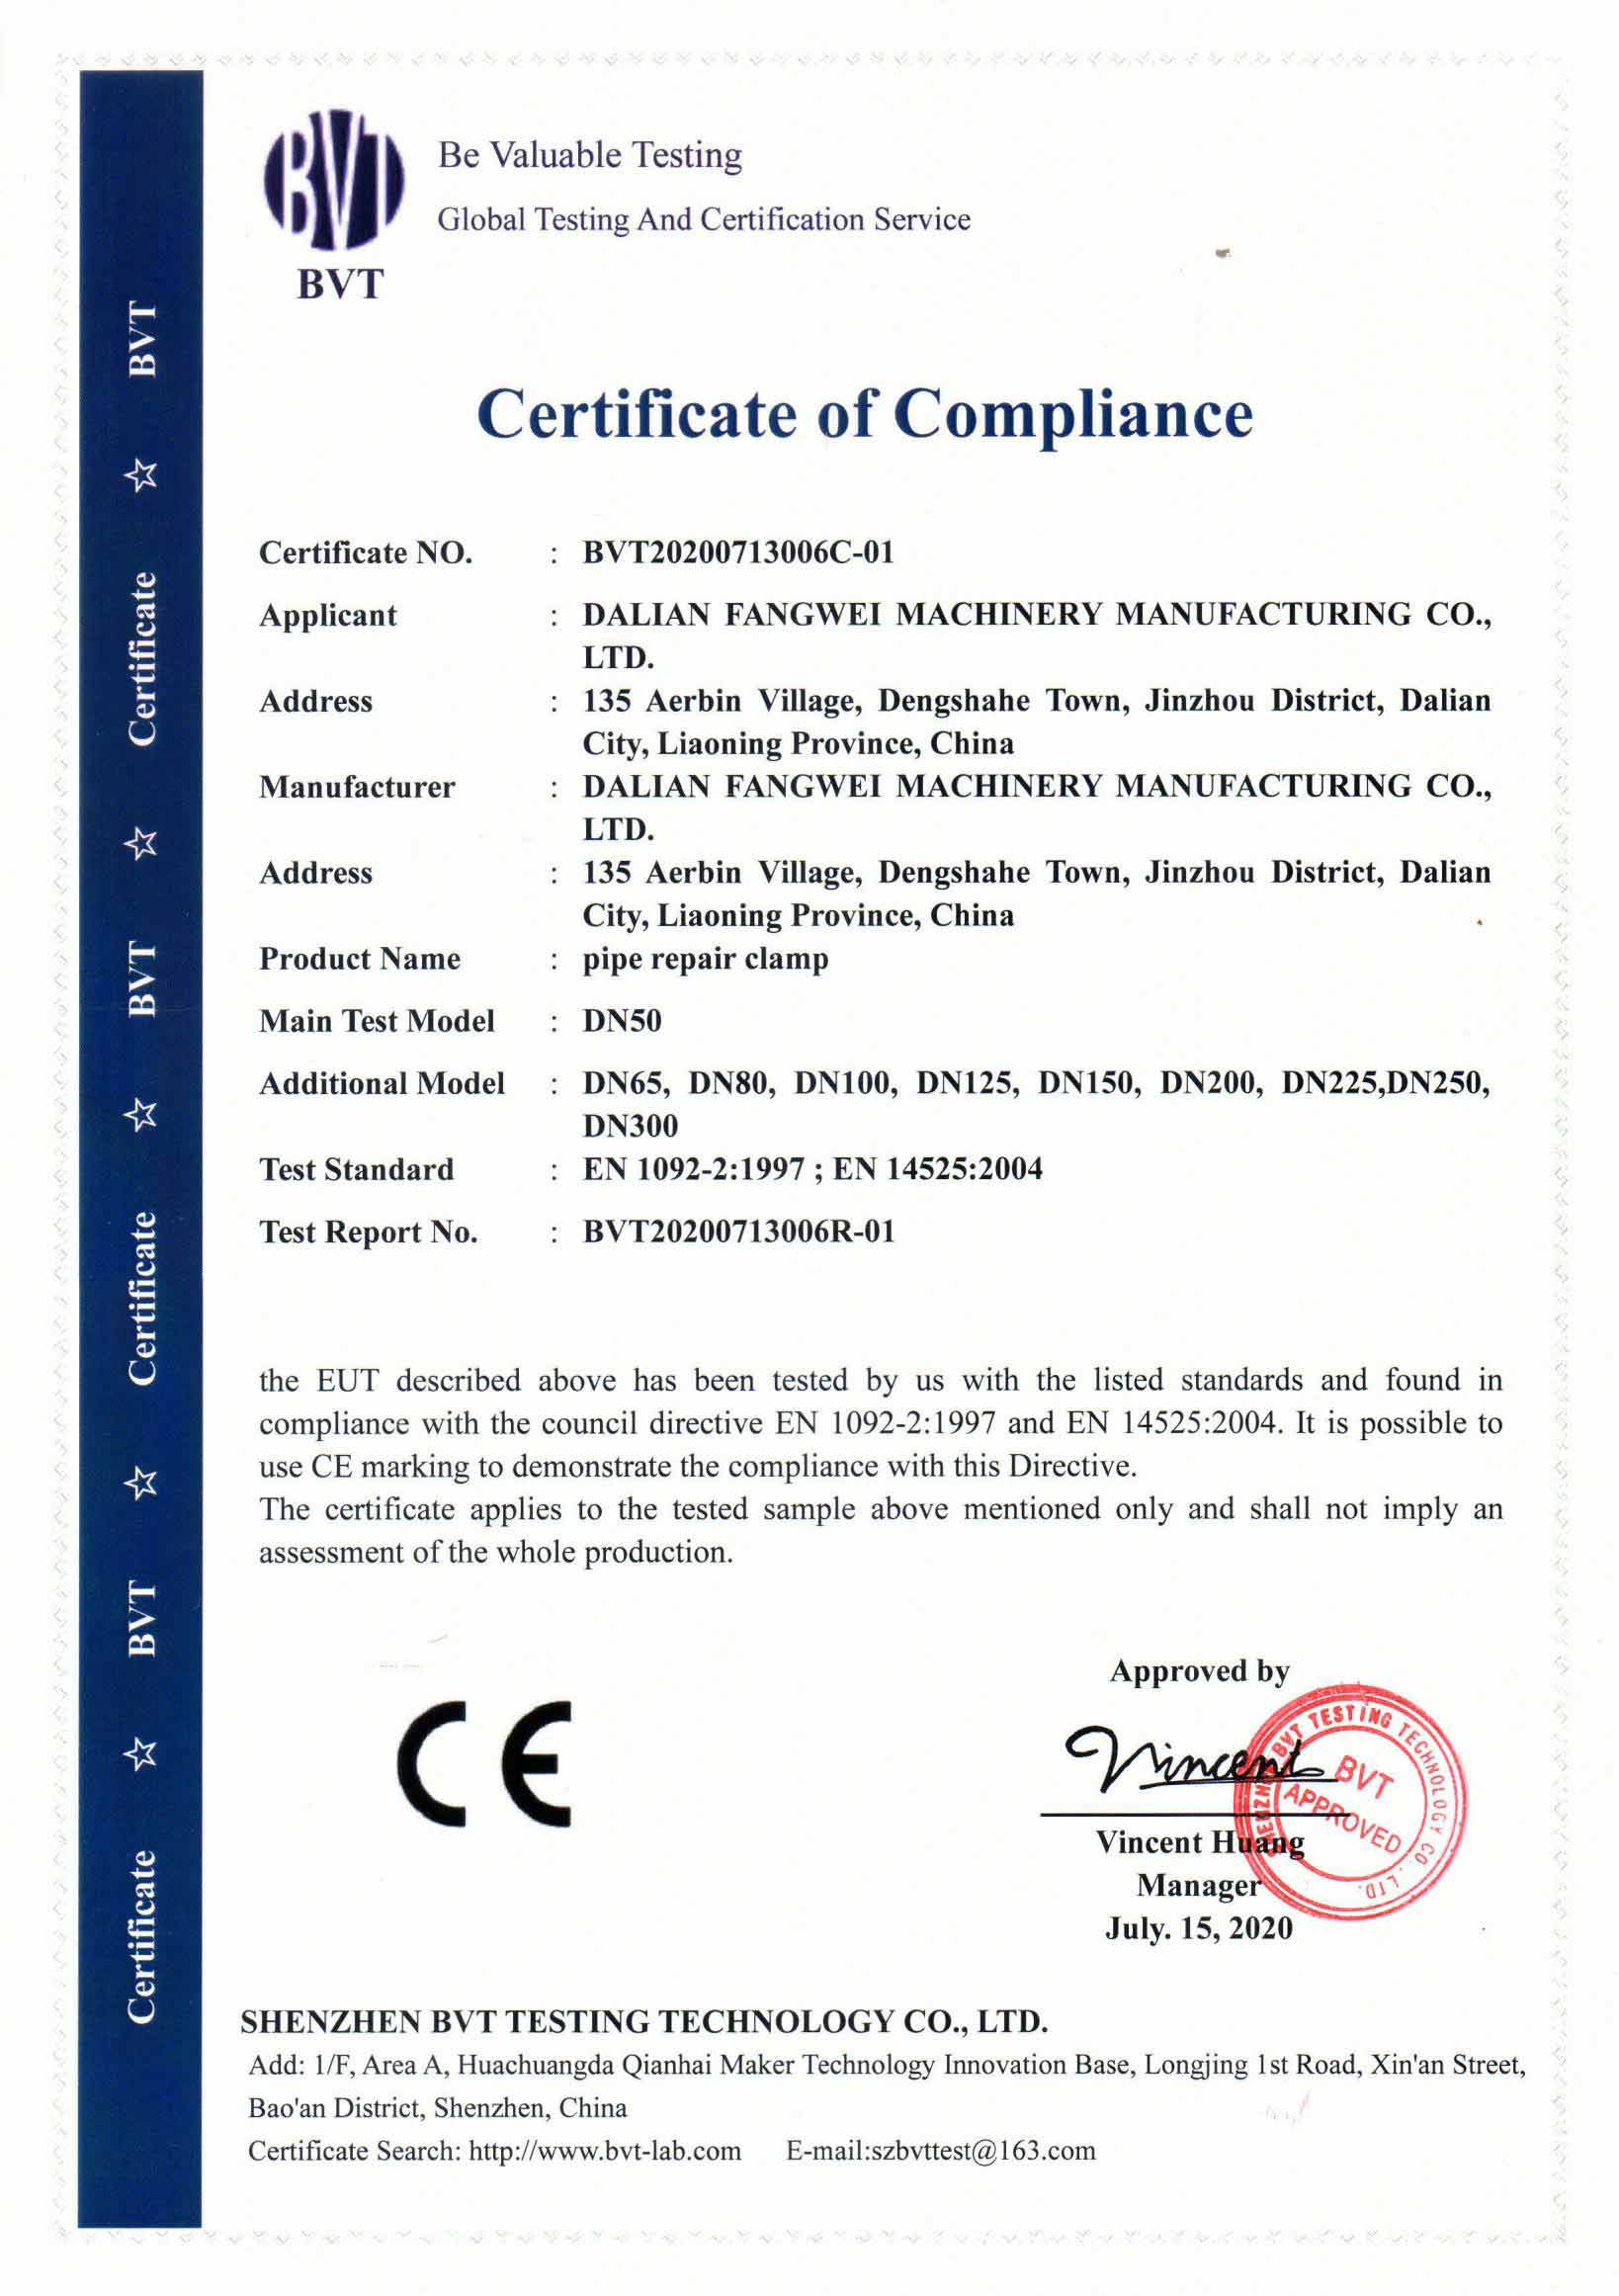 管道连接修补器CE证书